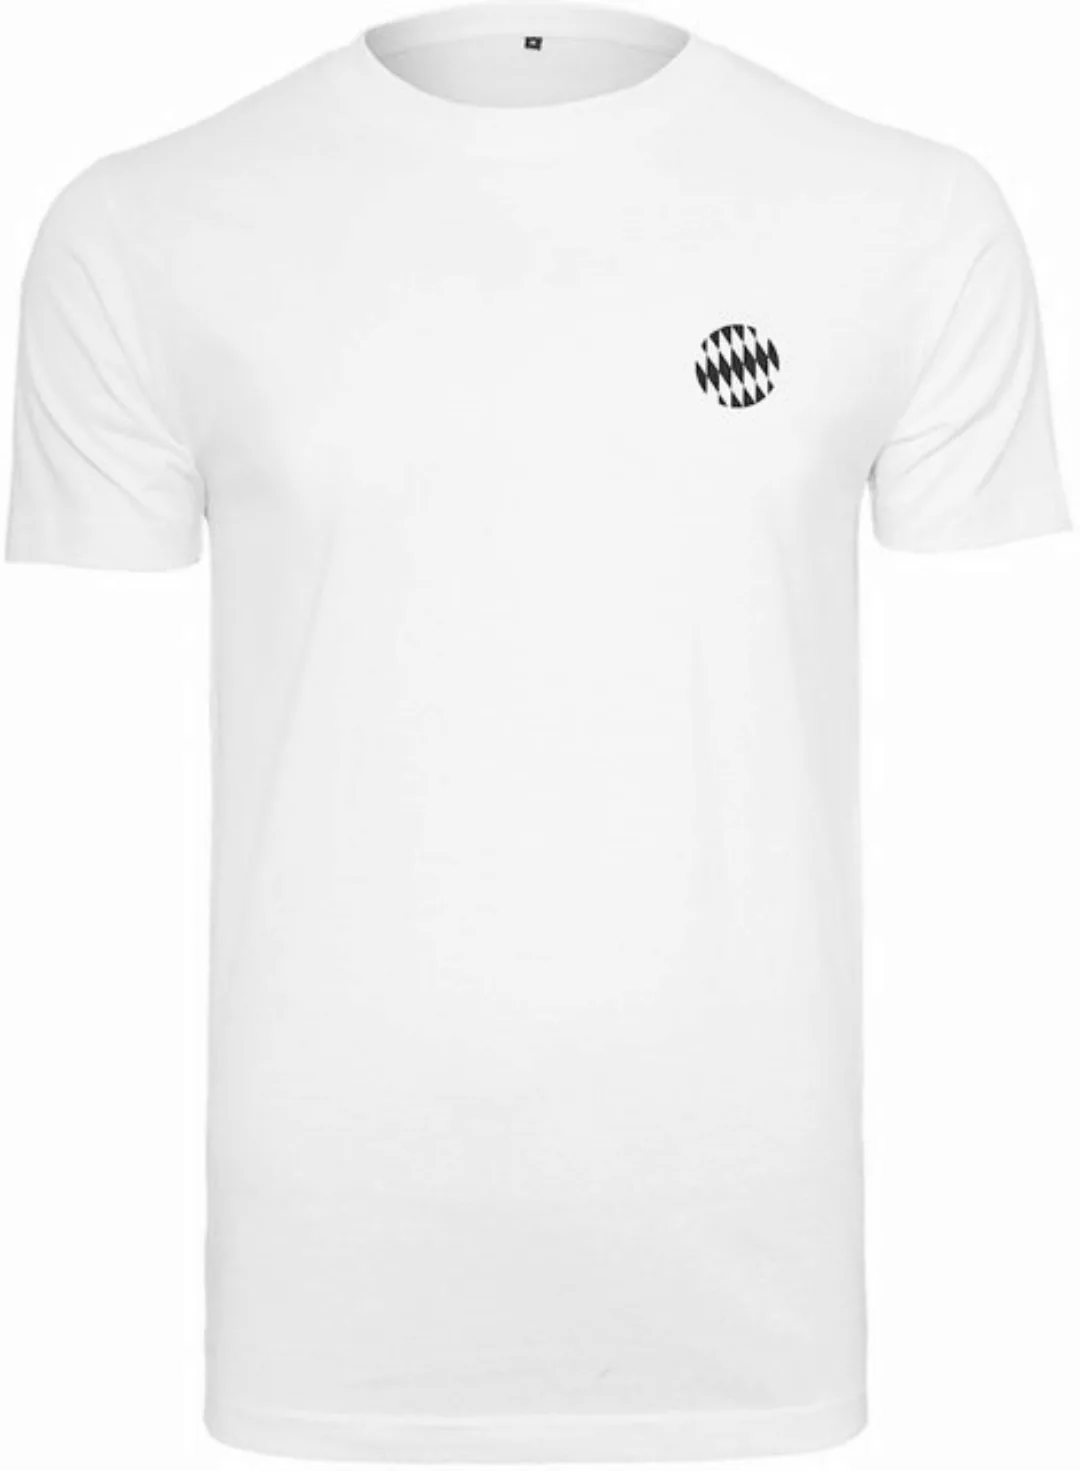 FC Bayern München T-Shirt T-Shirt Graphic günstig online kaufen